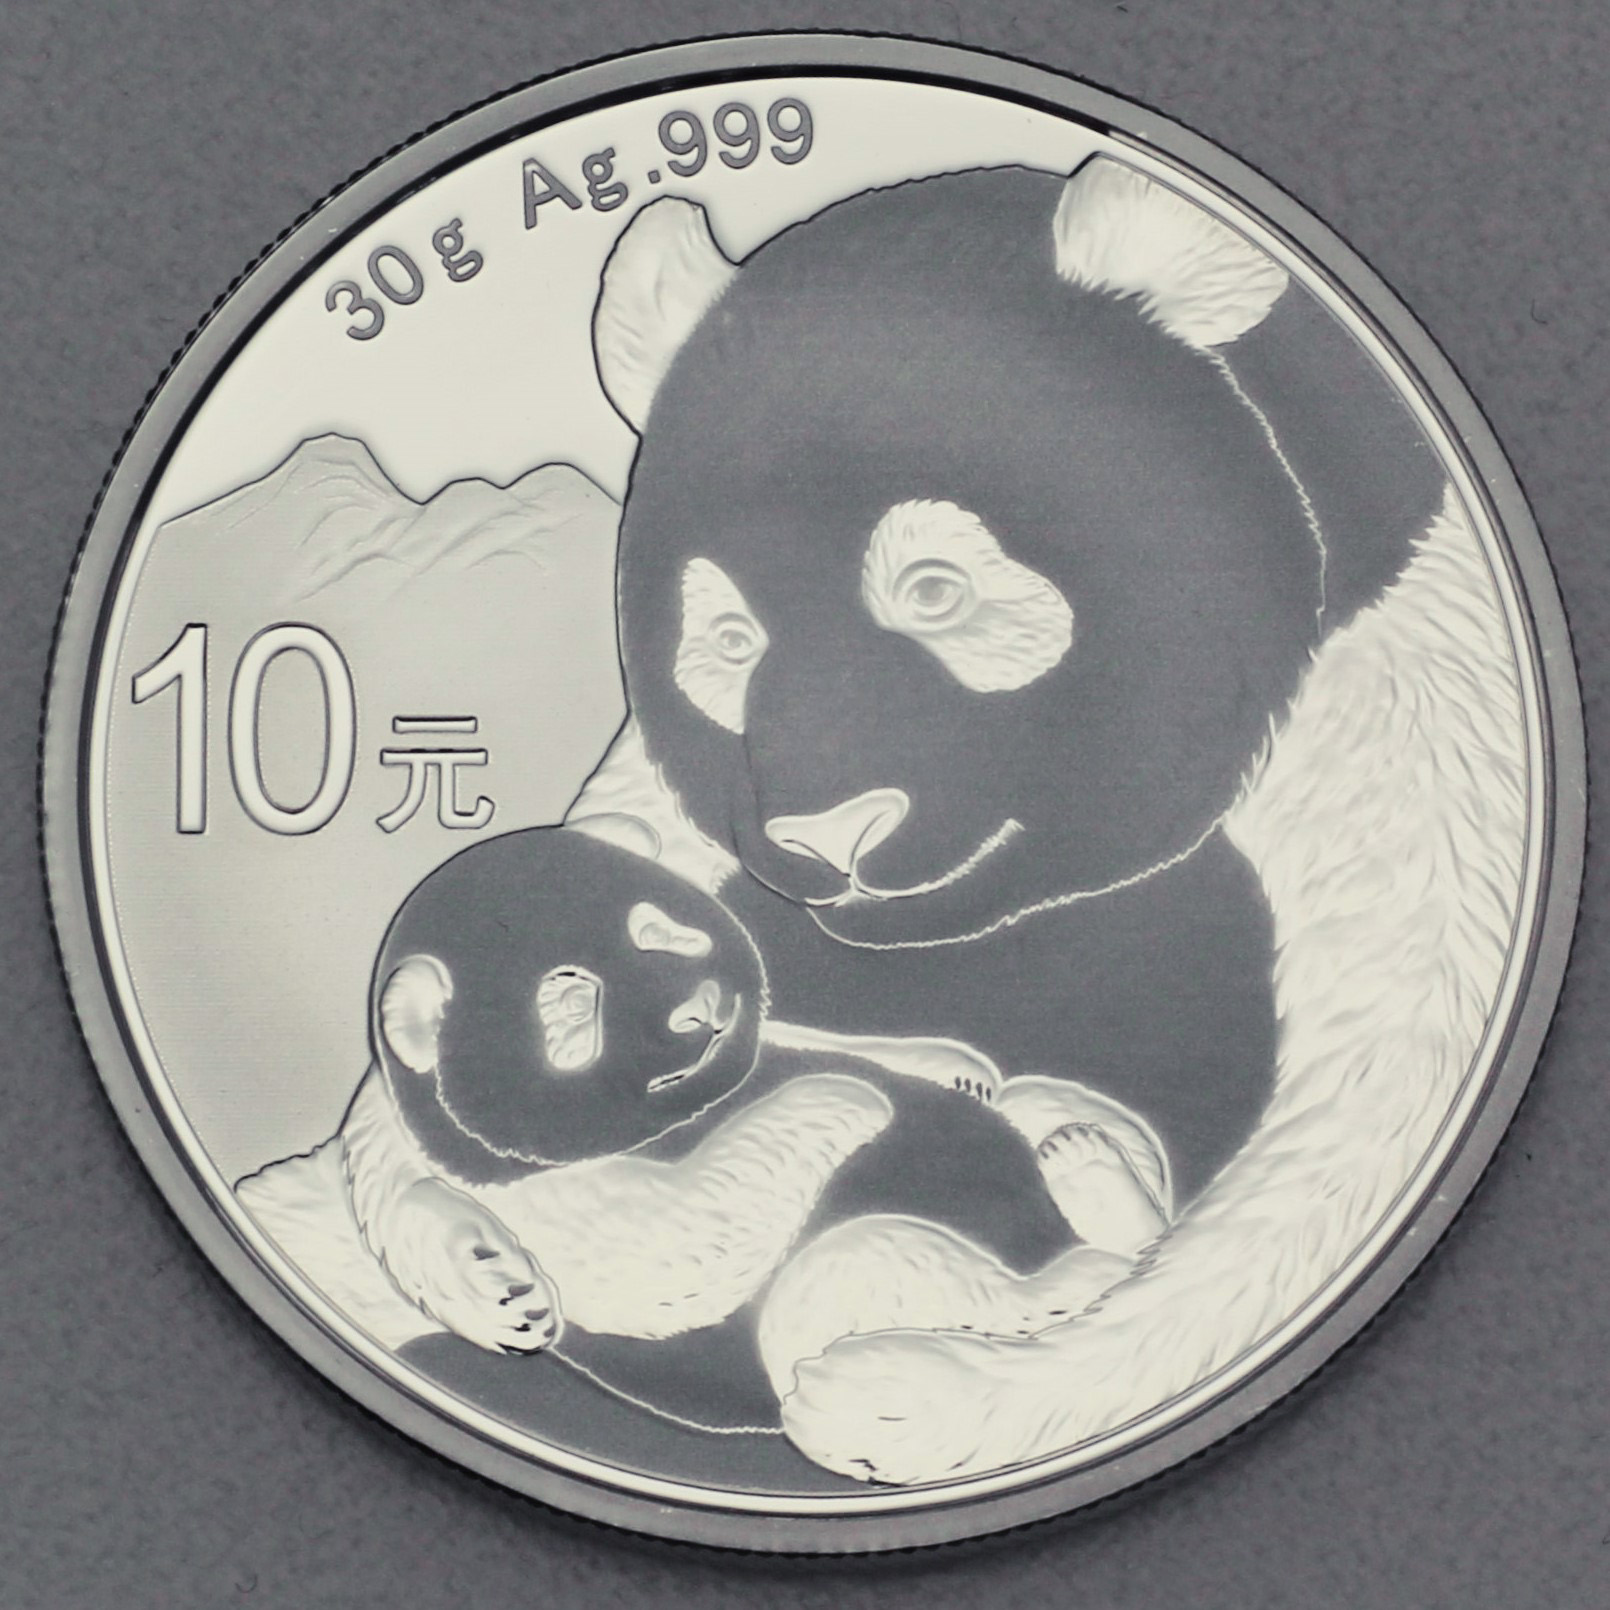 China Panda Silbermünzen Ankaufswert und Infos